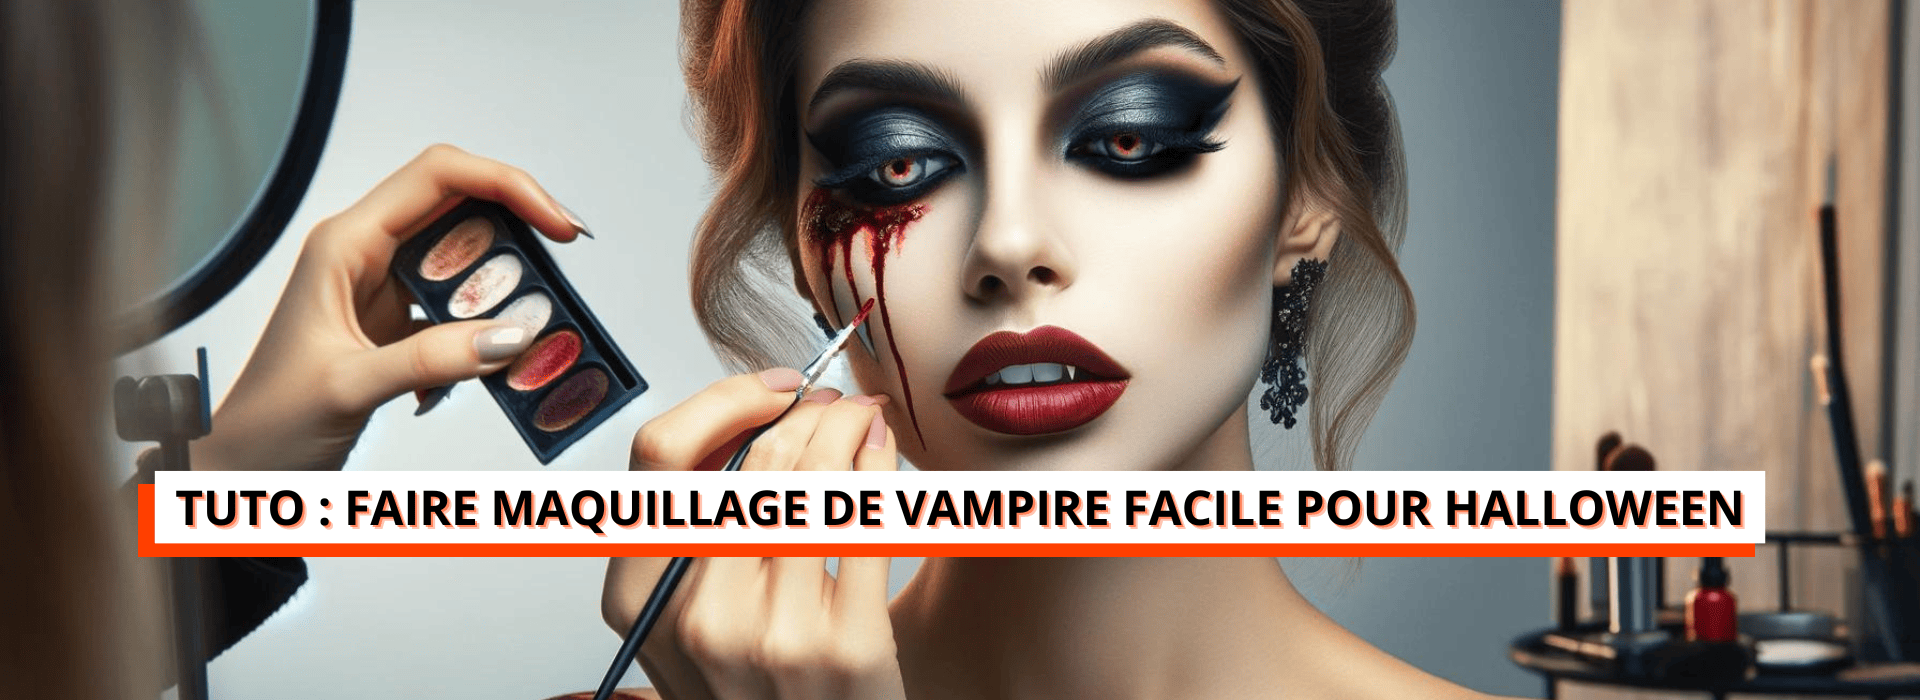 maquillage femme vampire